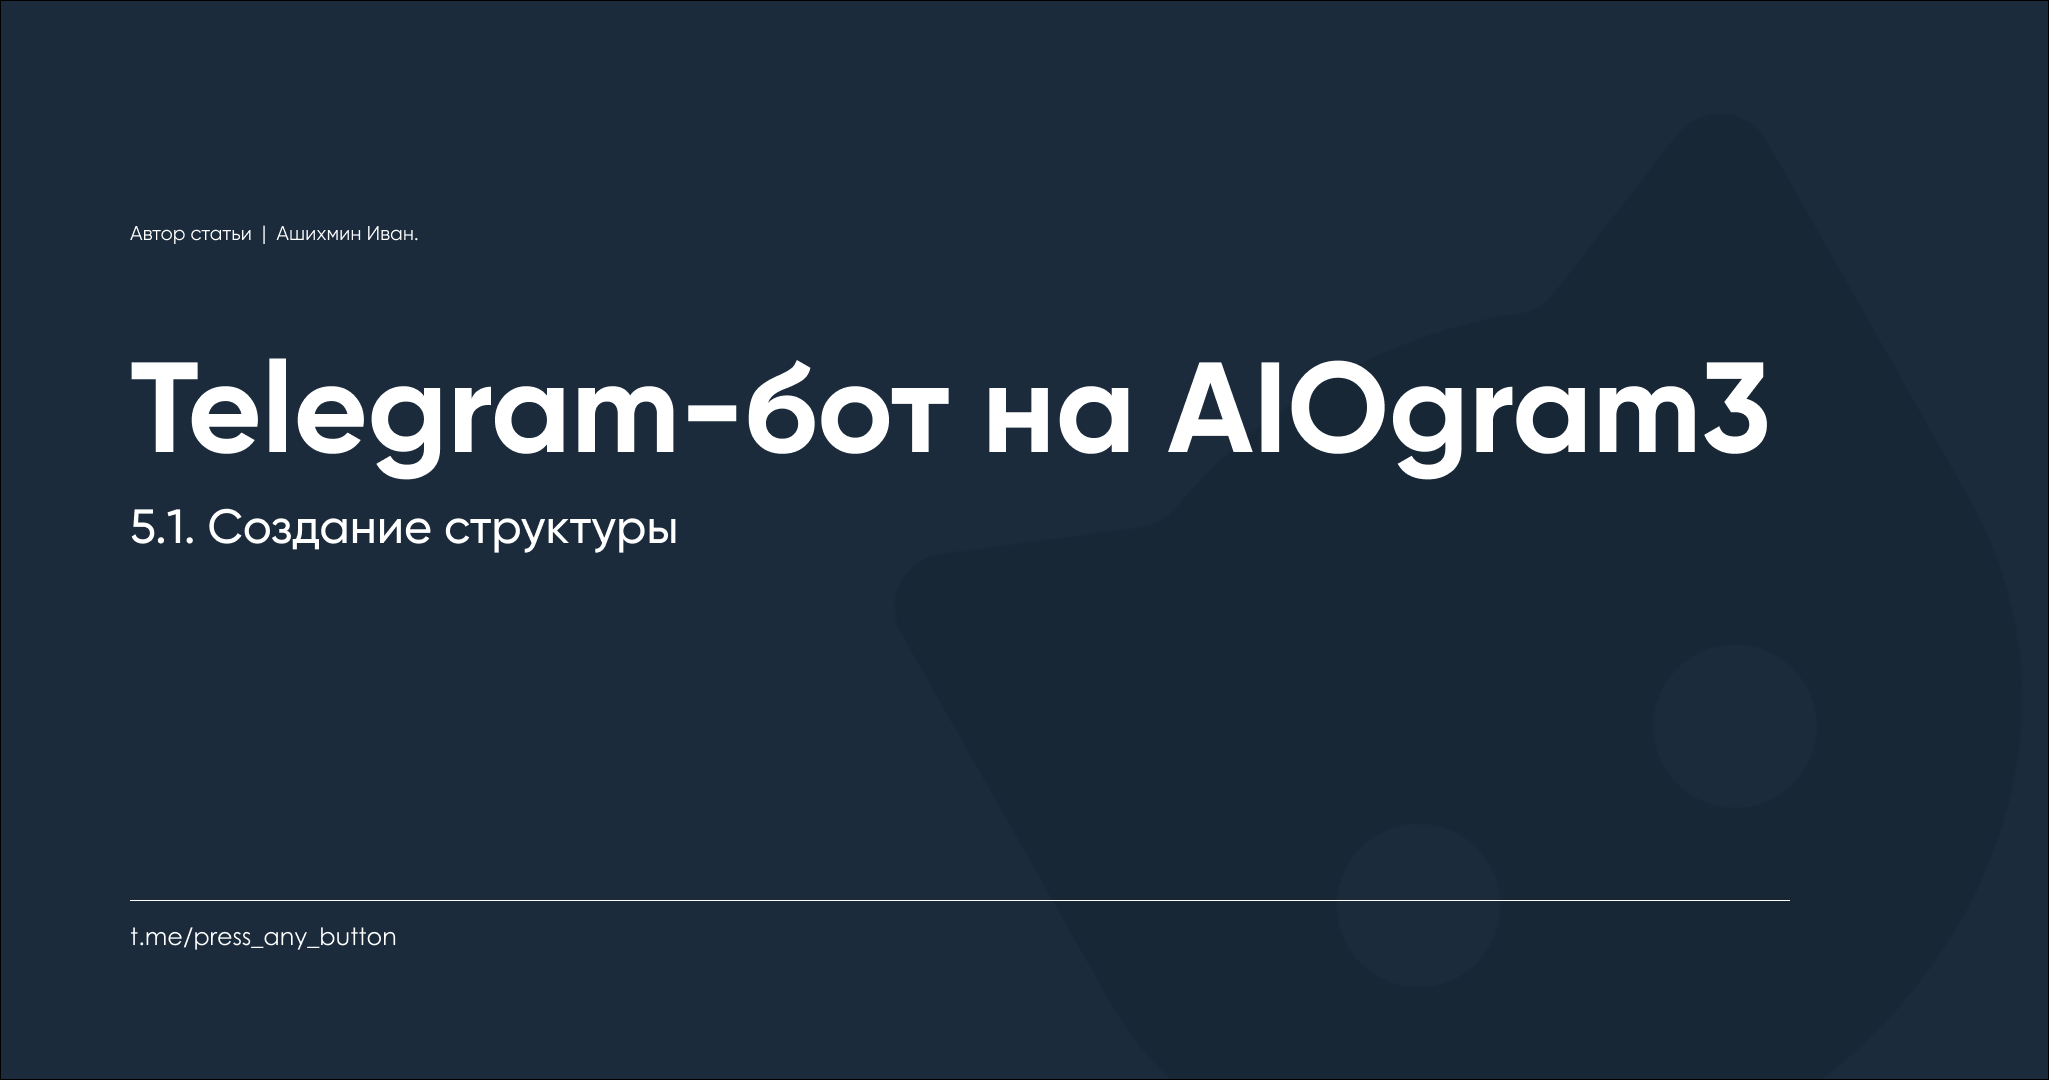 AIOgram3 5.1. Создание структуры